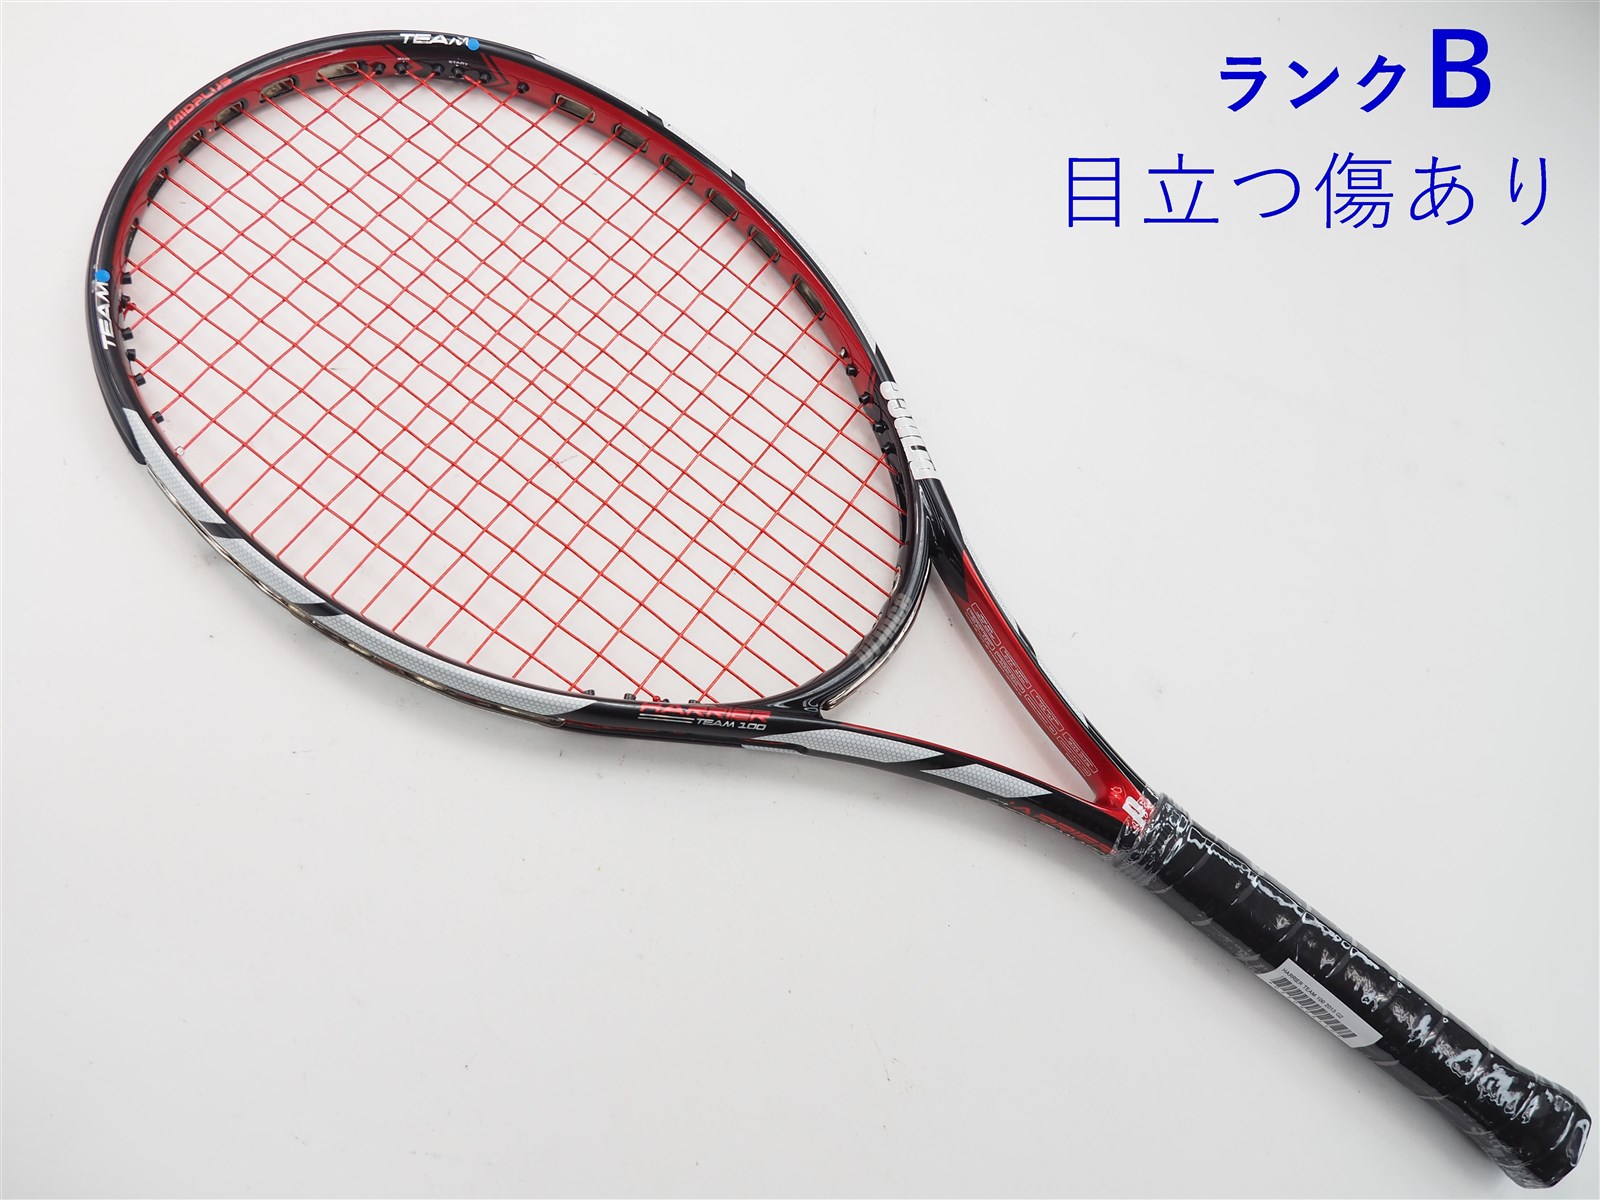 テニスラケット プリンス ハリアー チーム 100 2013年モデル (G1)PRINCE HARRIER TEAM 100 2013292ｇ張り上げガット状態